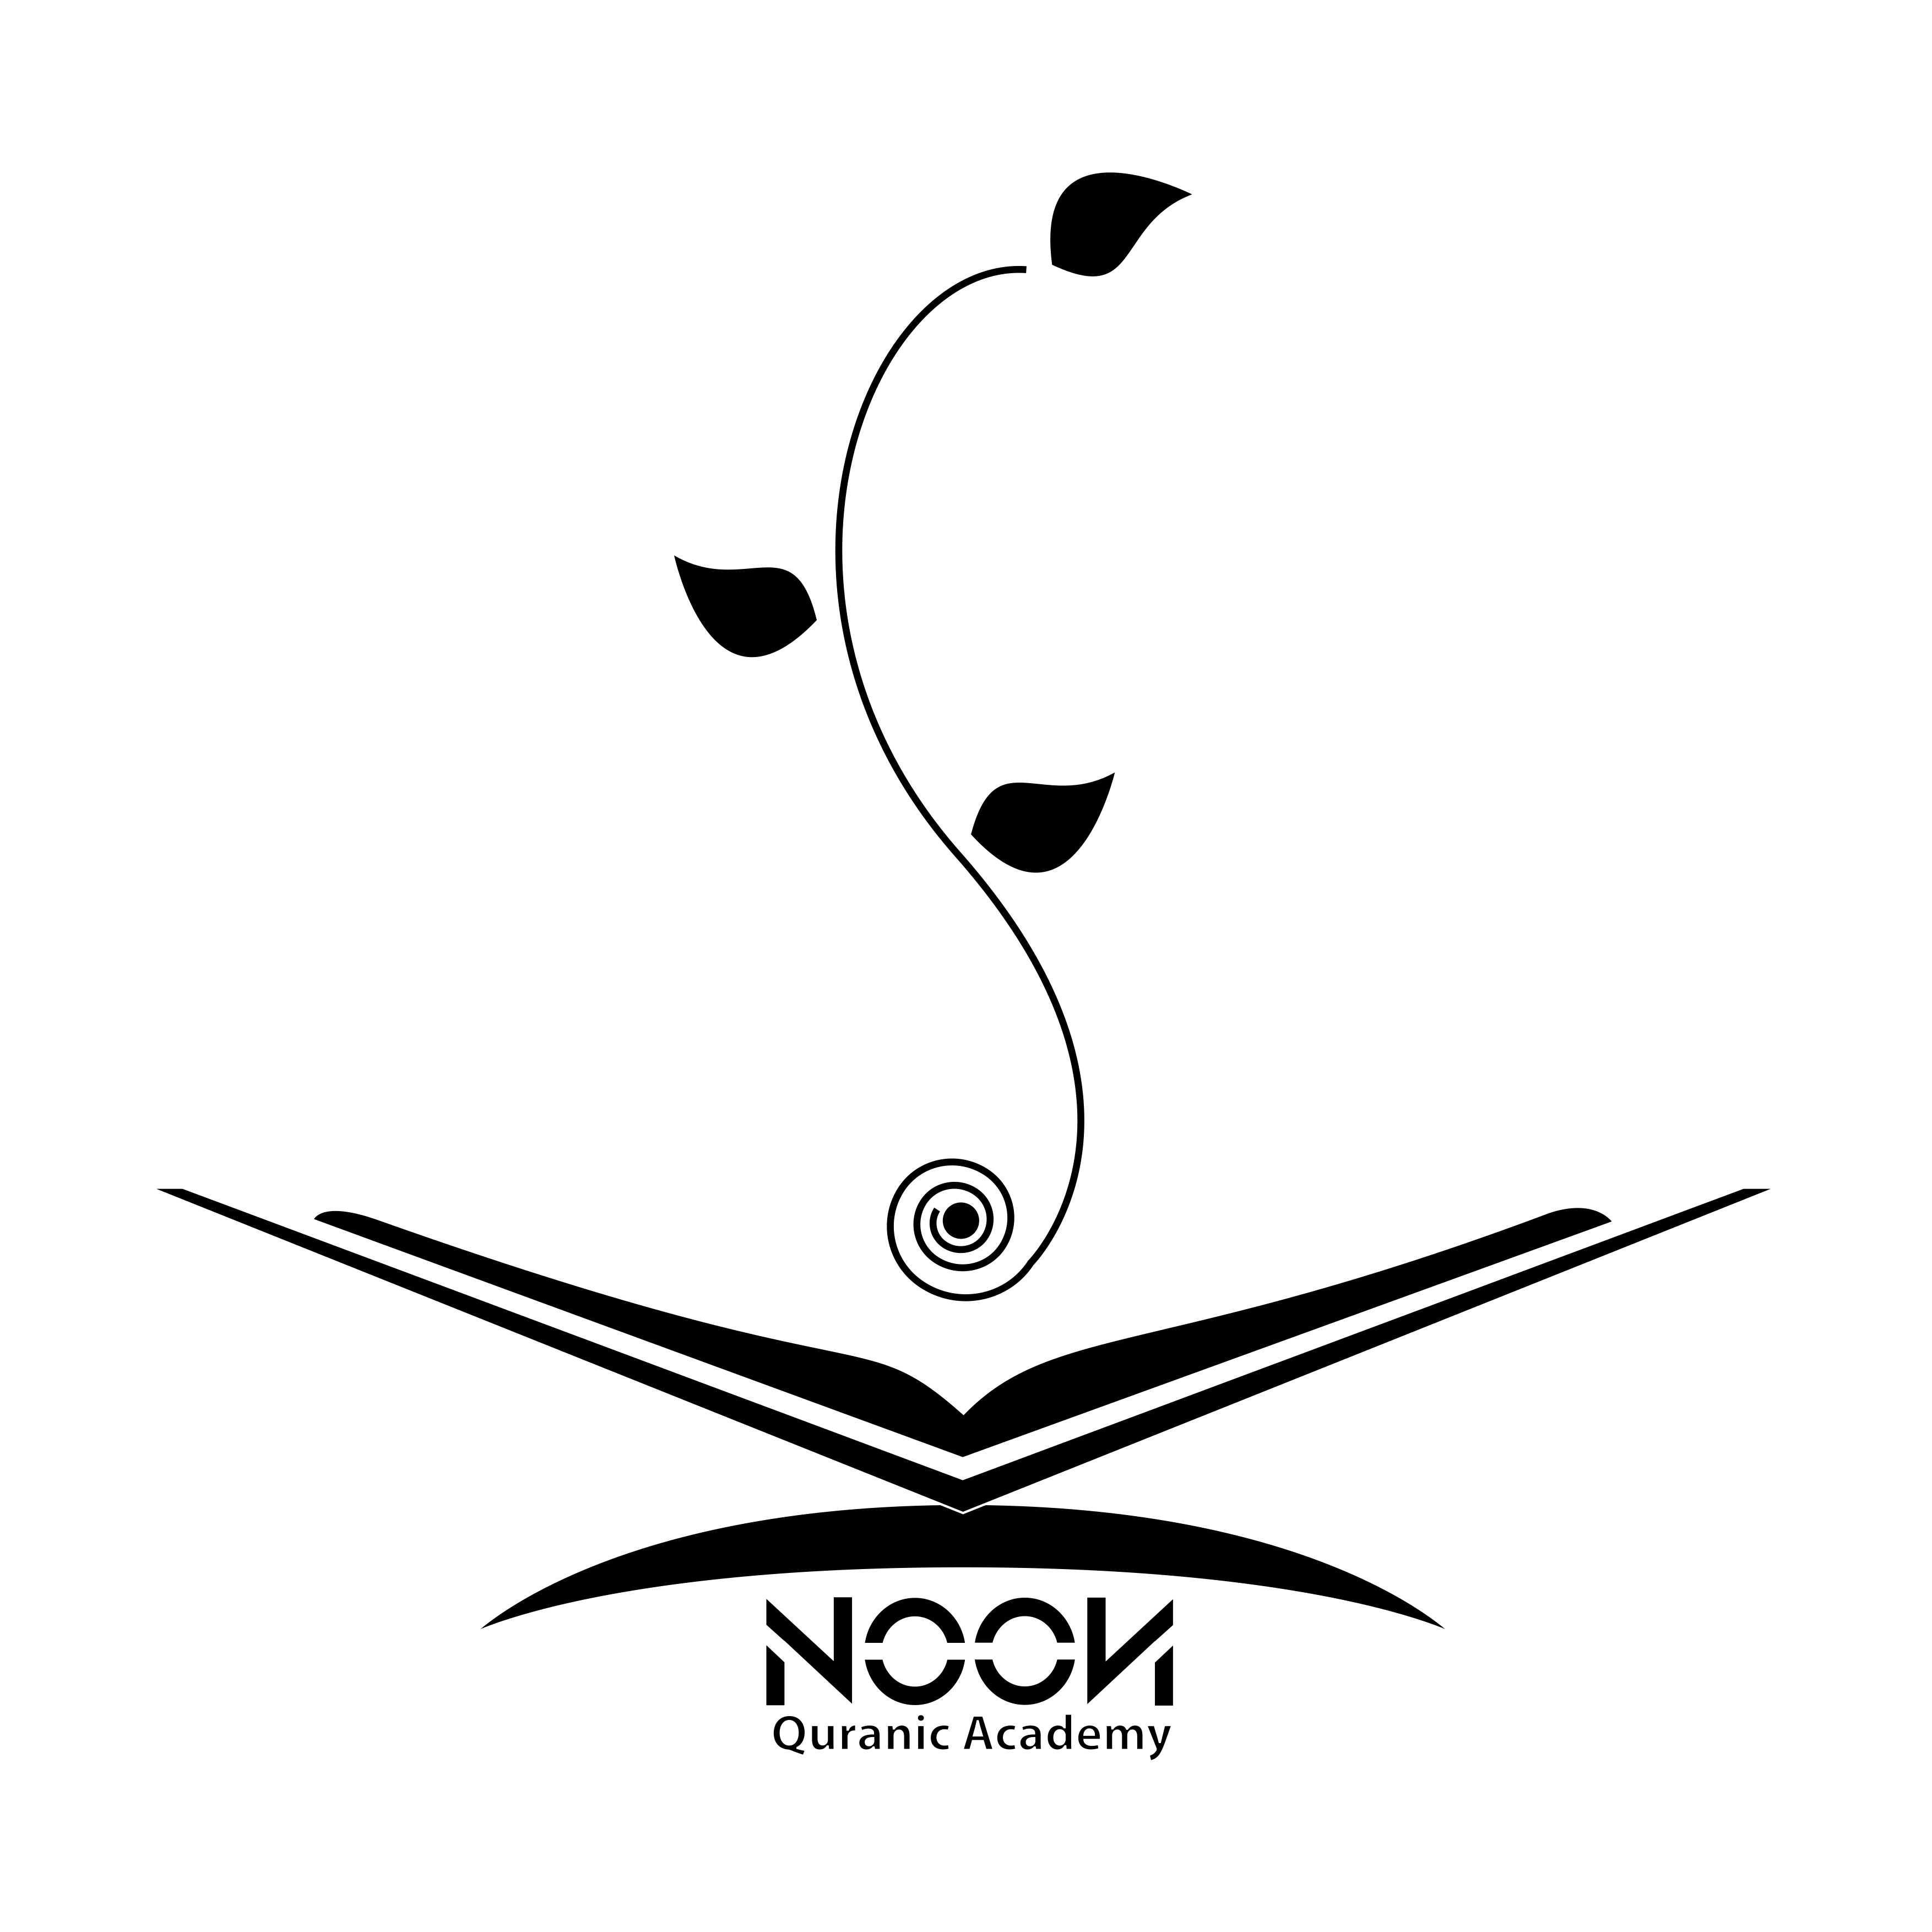 NooN Quranic Academy